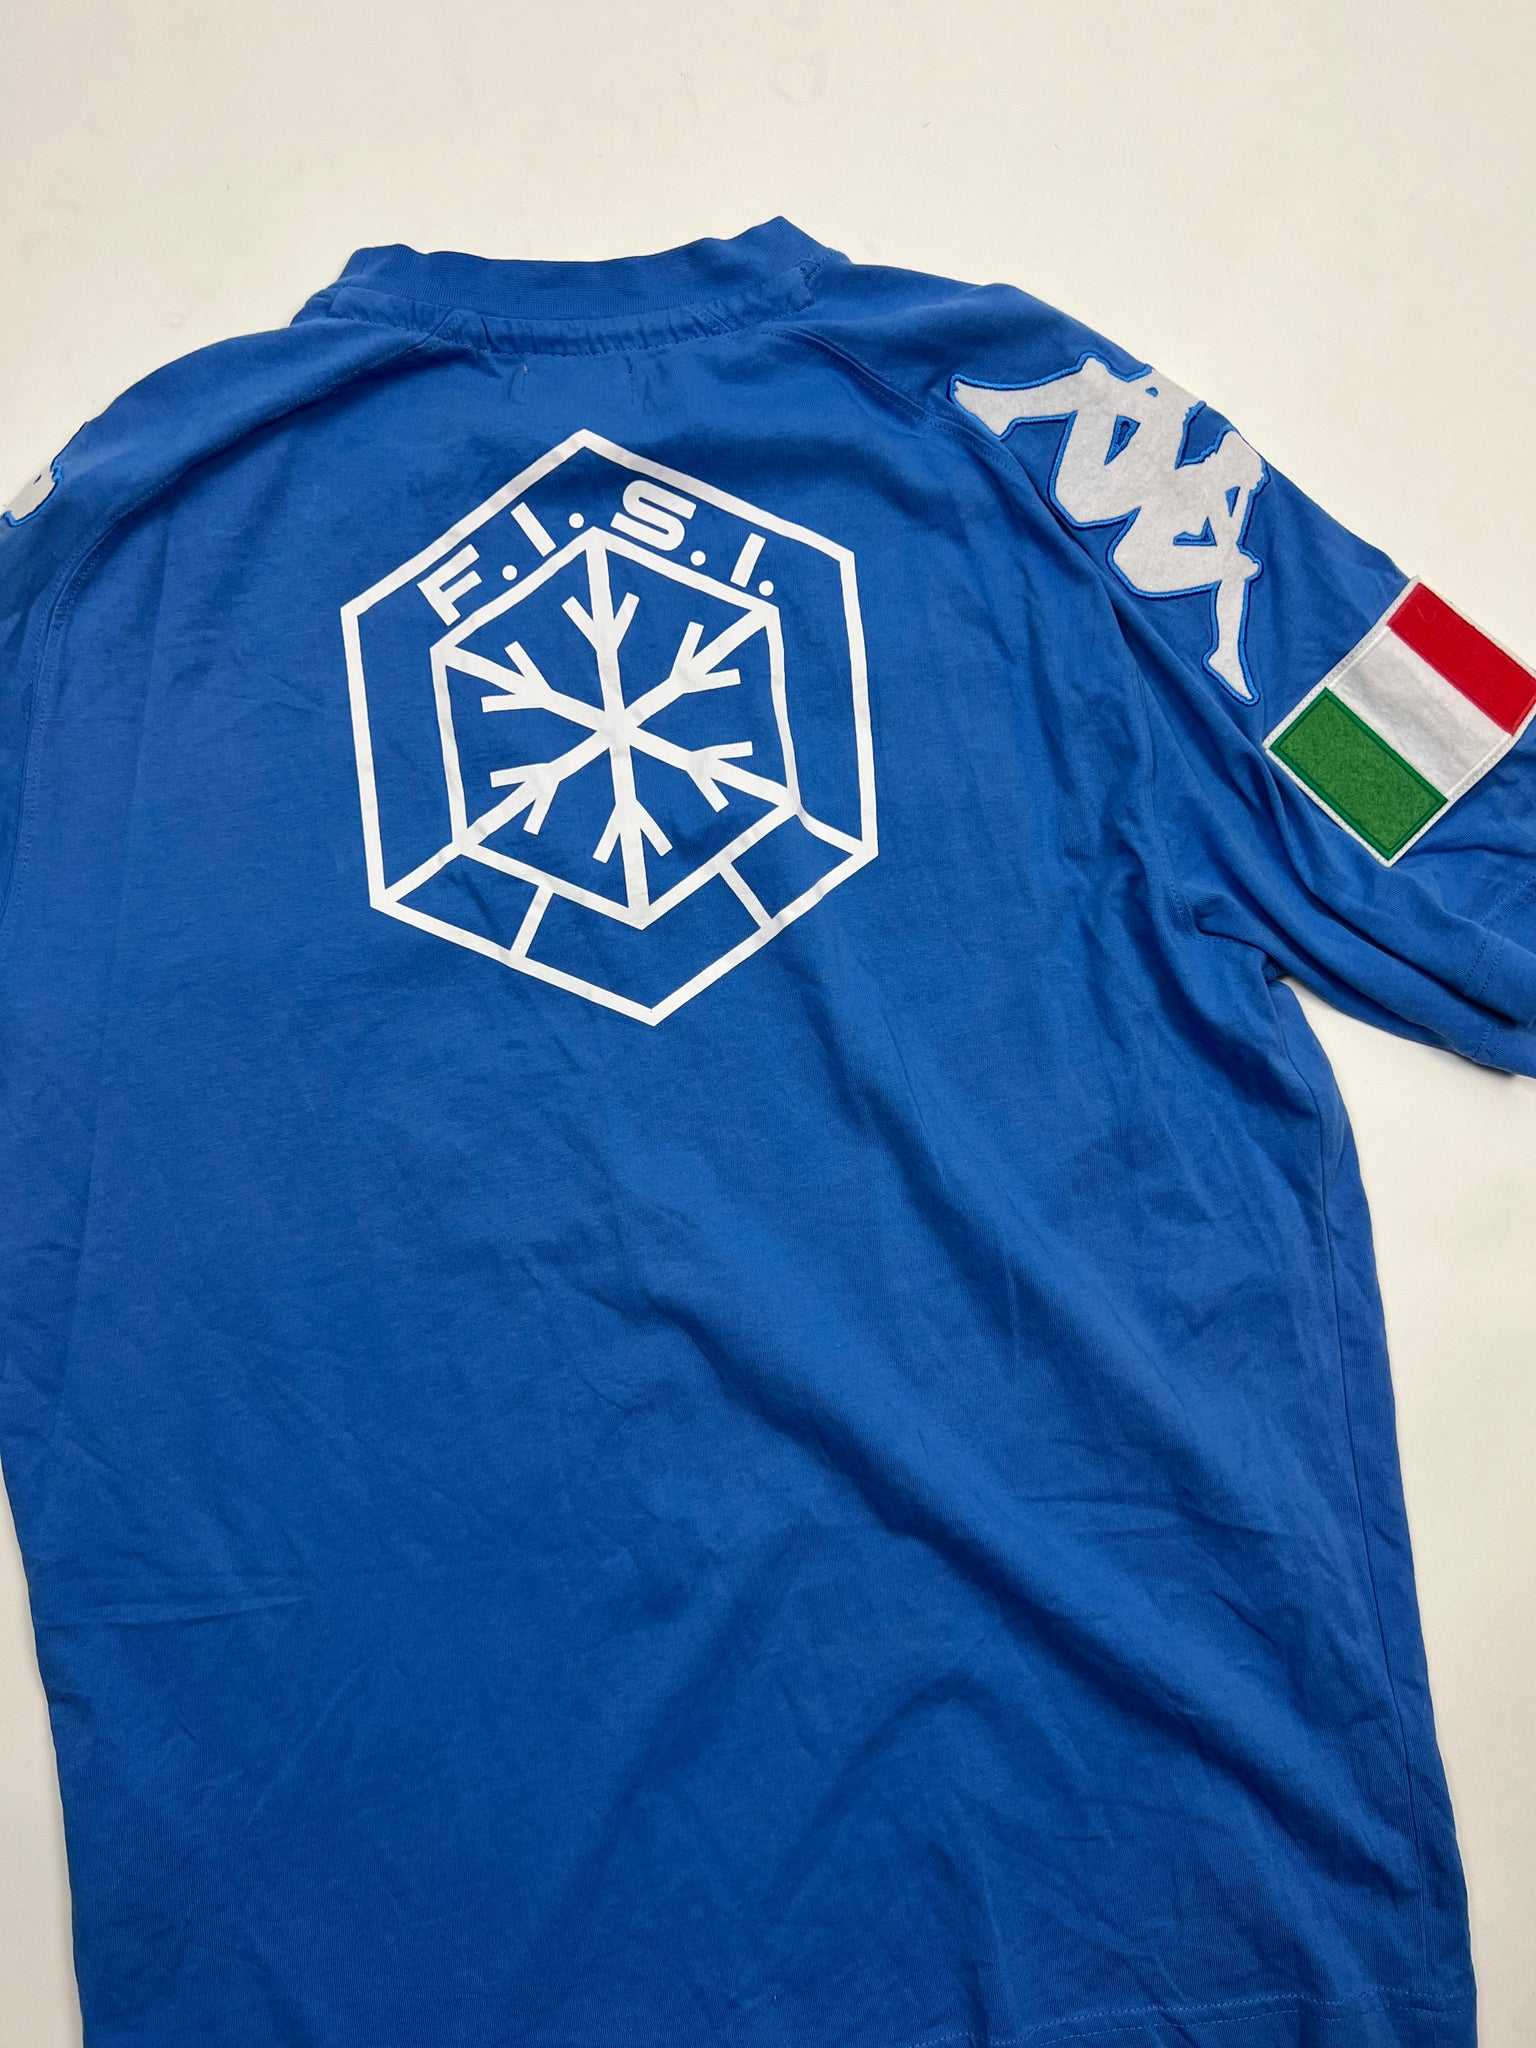 Kappa Italia T-Shirt (L)